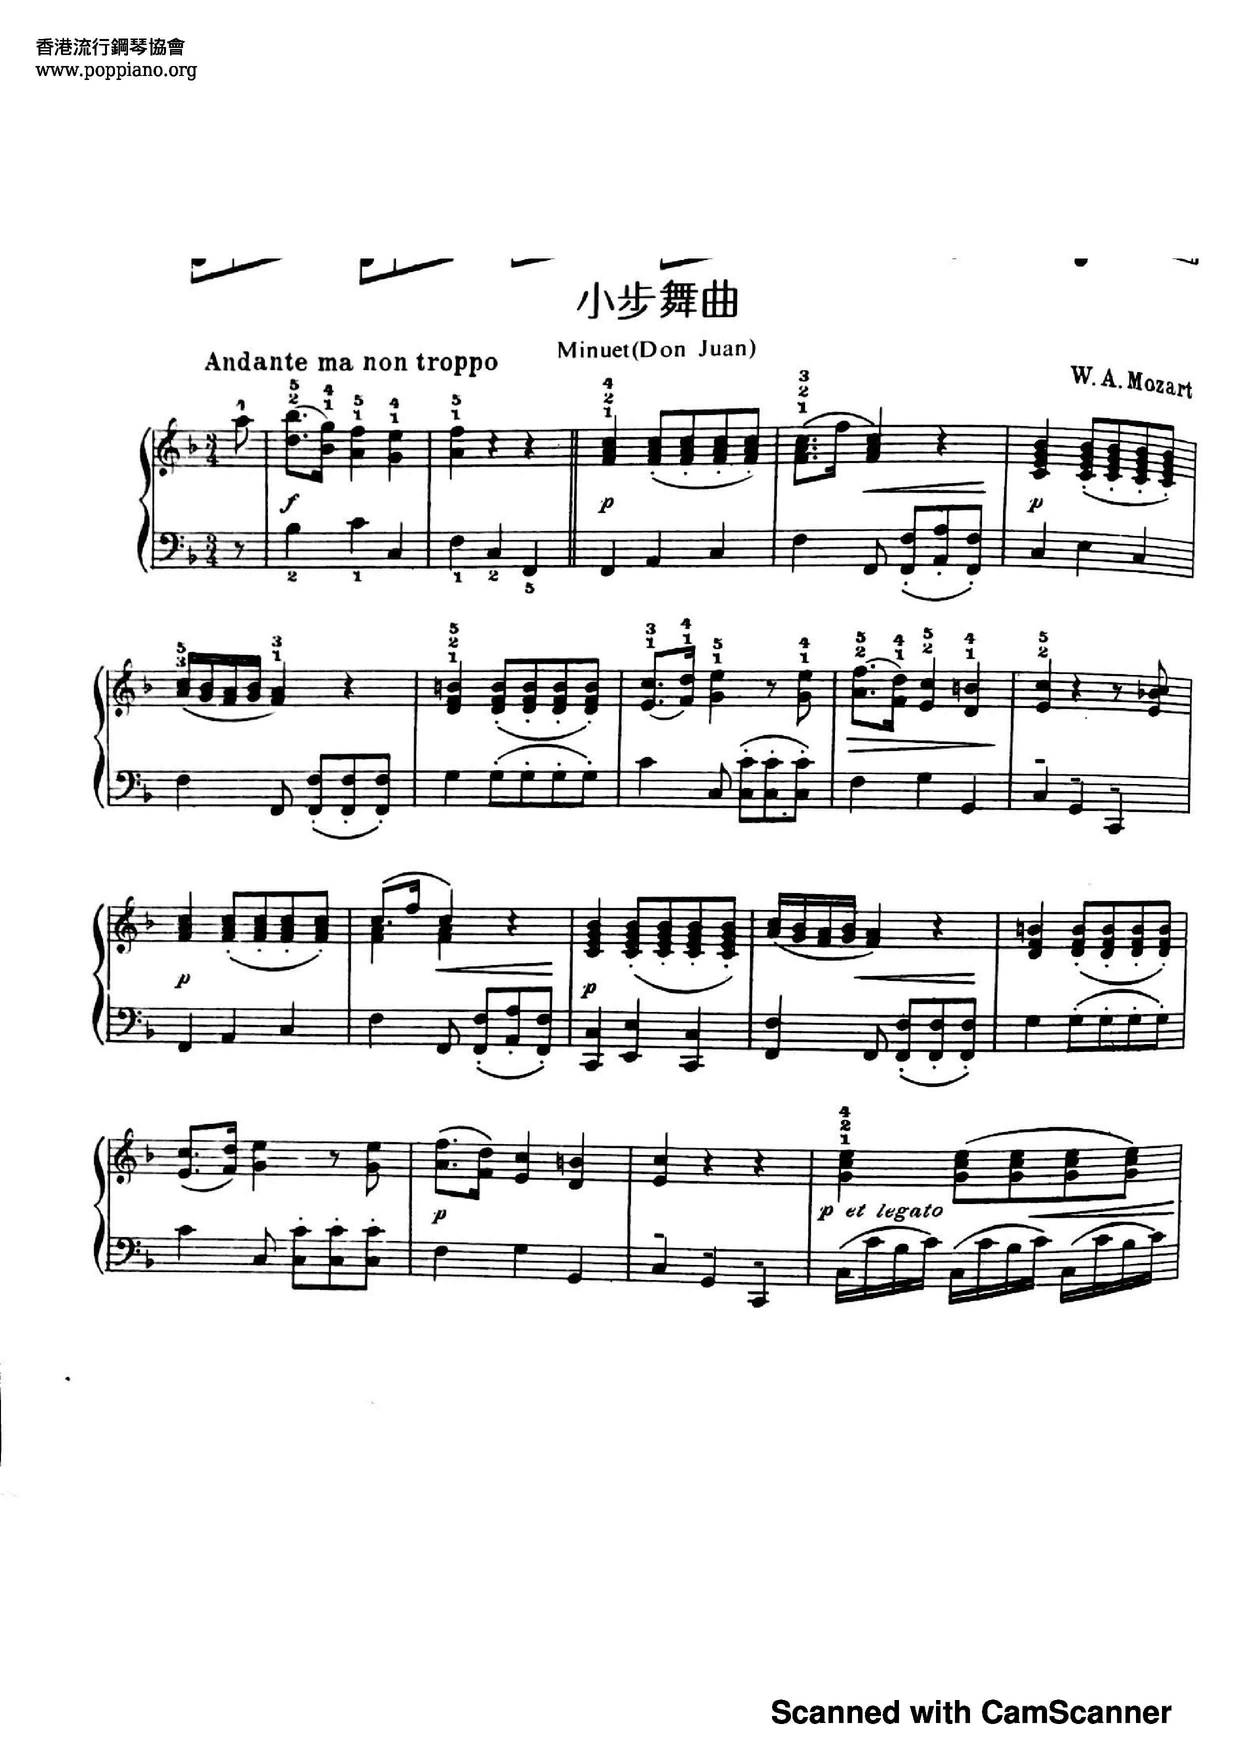 Minuet (From Don Juan)ピアノ譜